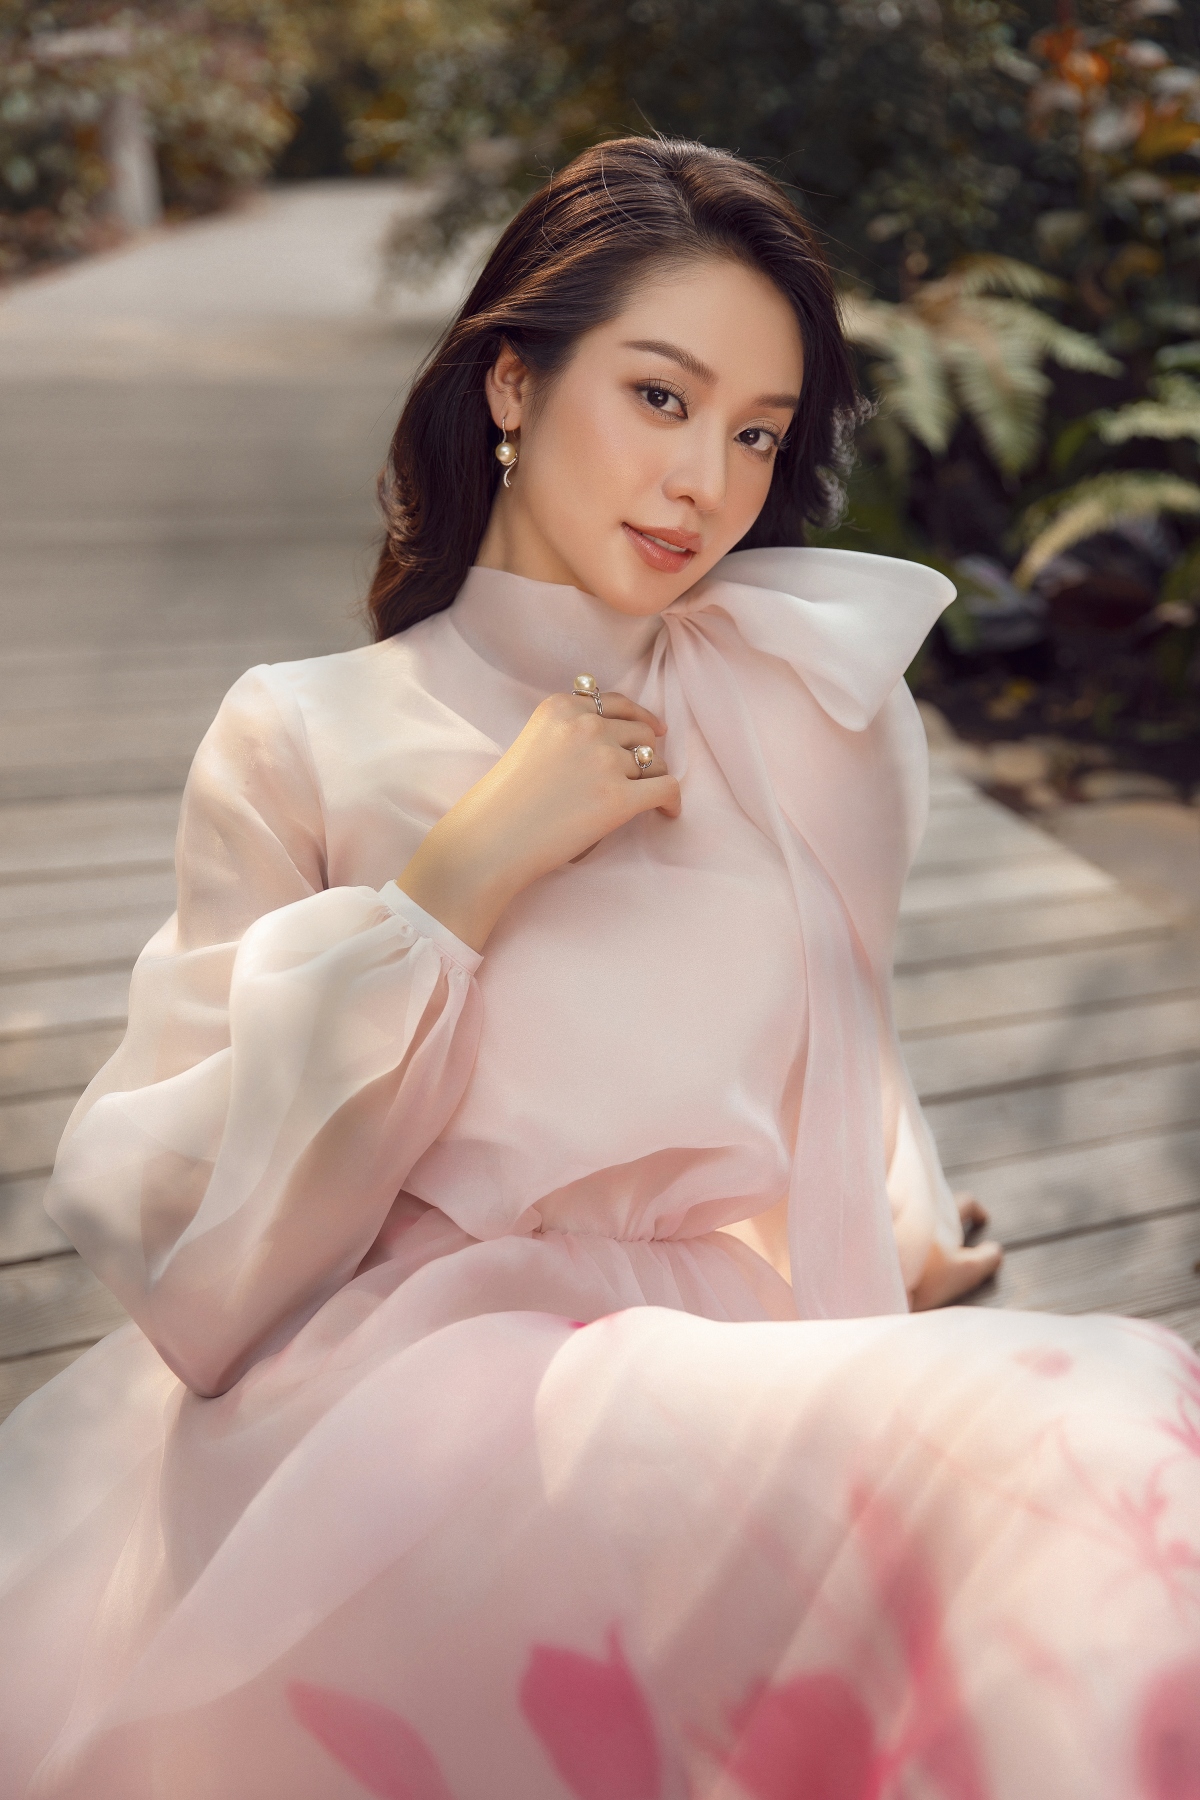 Hoa hậu Thanh Thủy đẹp gợi cảm trong bộ ảnh mới - Ảnh 14.